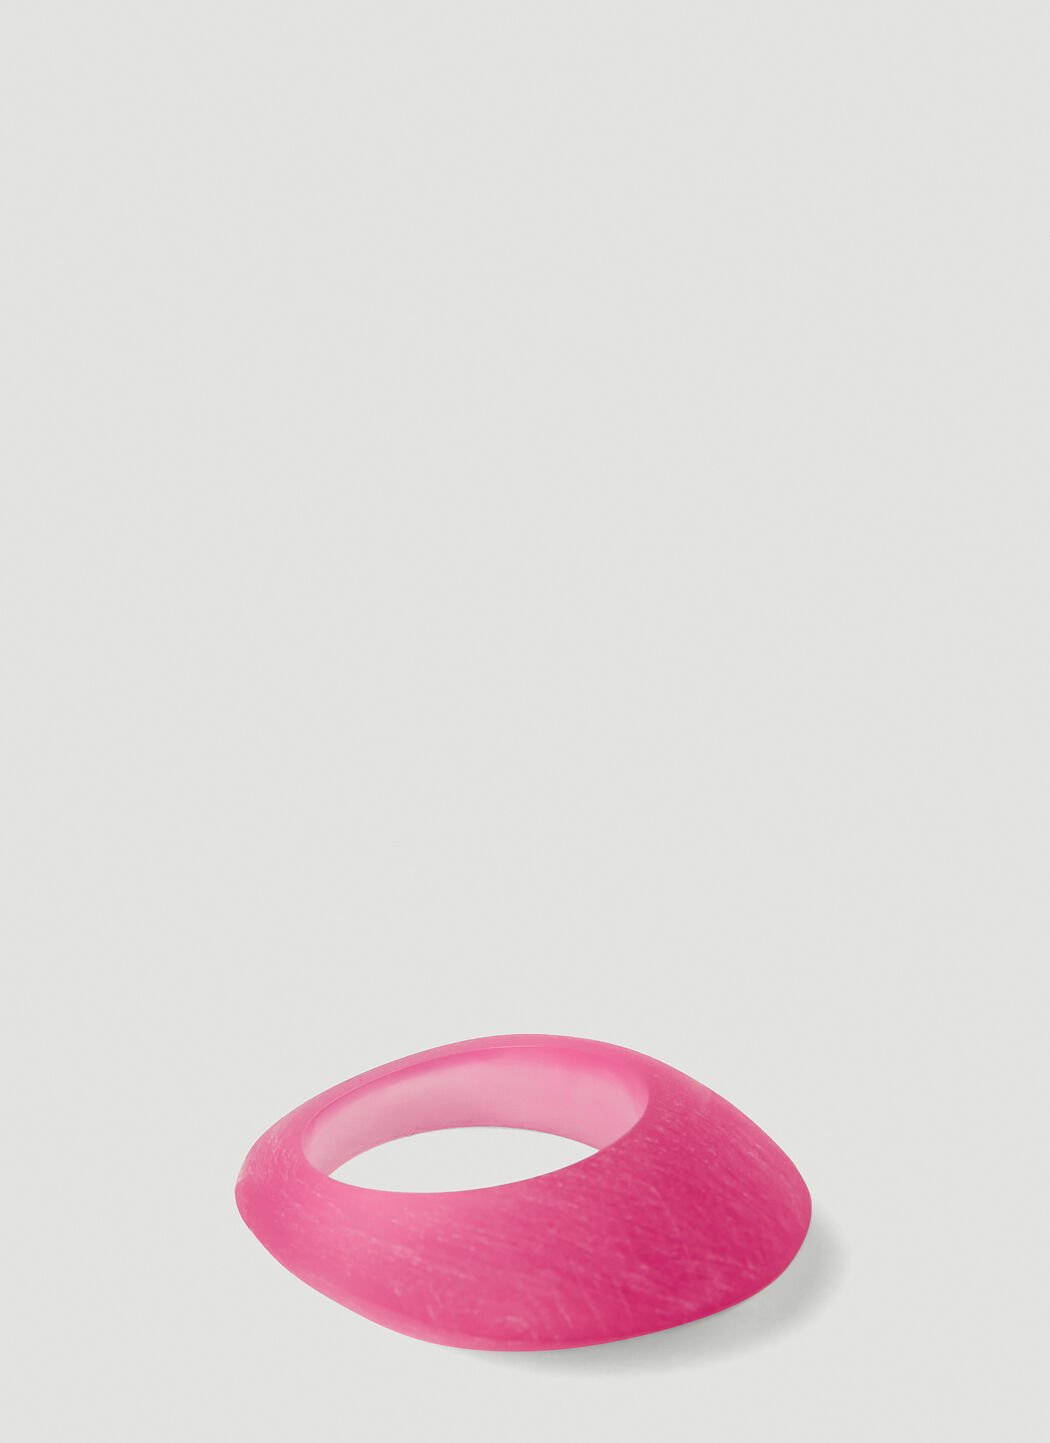 Dolce & Gabbana Resin Ring Pink dol0253027